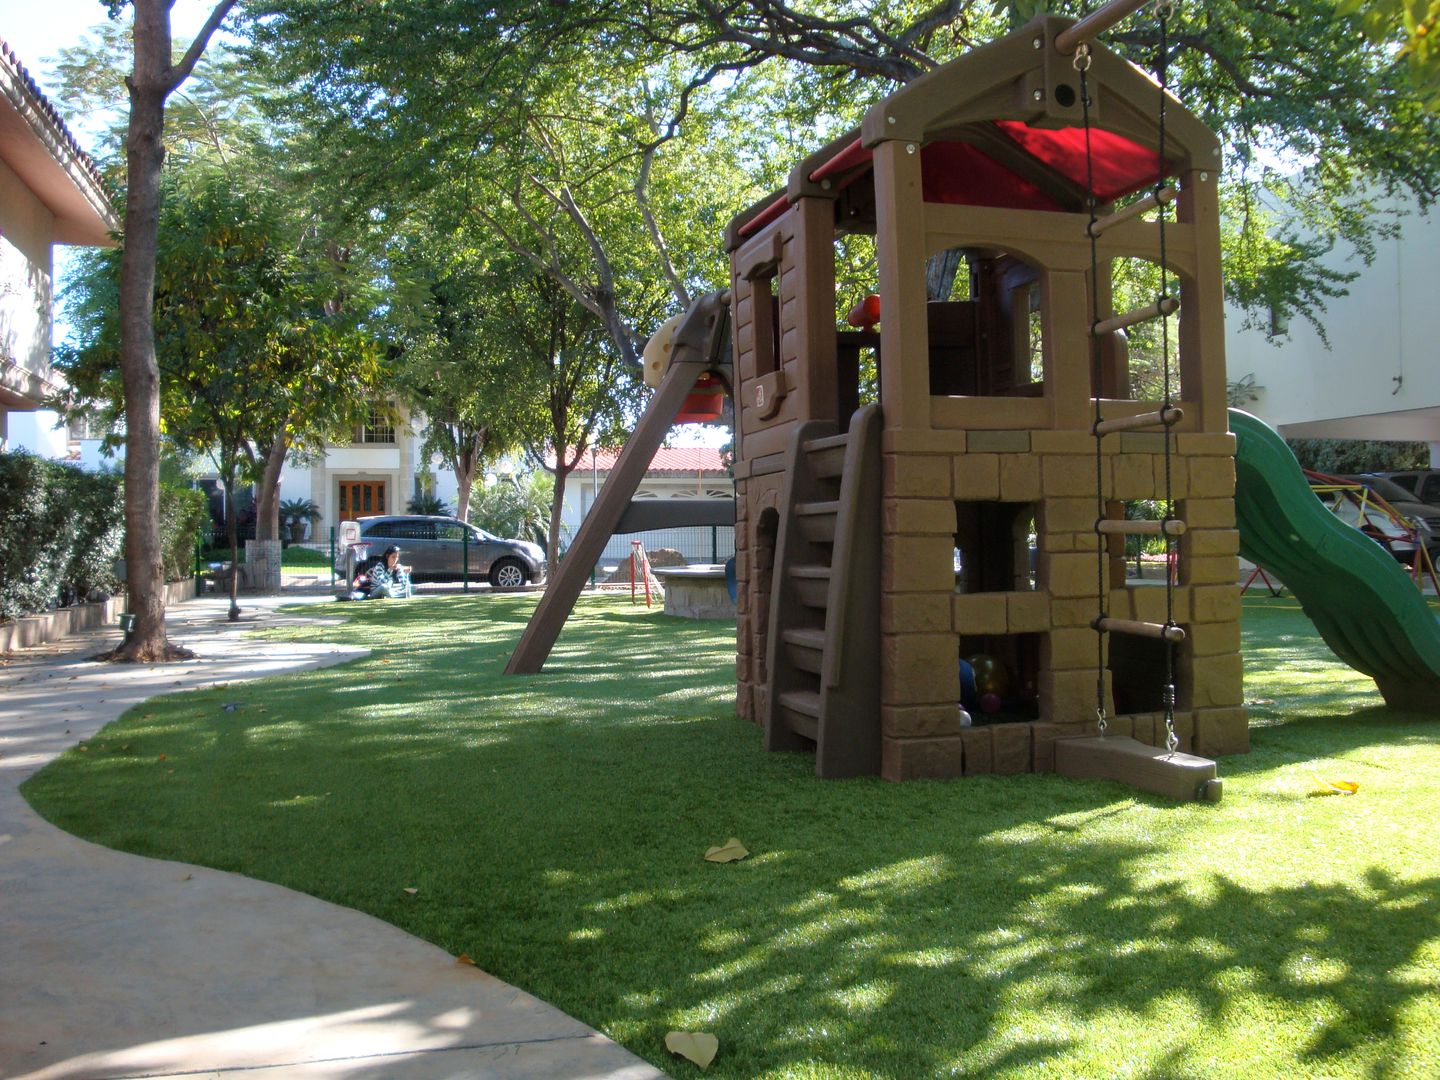 Área para niños, Arte Verde - Favor de pisar el césped Arte Verde - Favor de pisar el césped Espaços comerciais Espaços comerciais